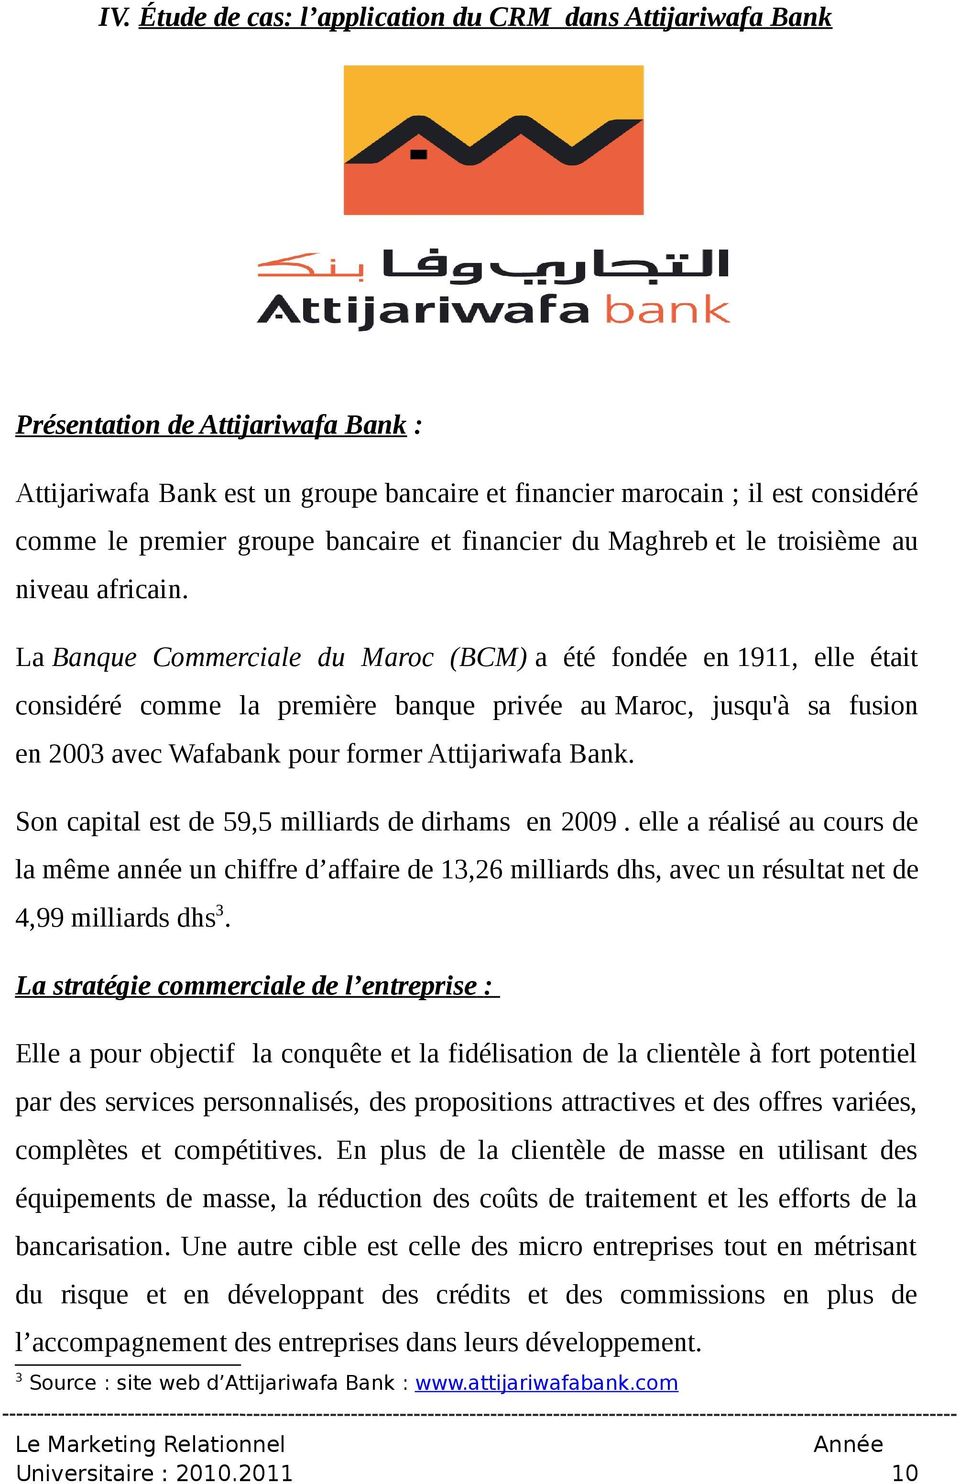 La Banque Commerciale du Maroc (BCM) a été fondée en 1911, elle était considéré comme la première banque privée au Maroc, jusqu'à sa fusion en 2003 avec Wafabank pour former Attijariwafa Bank.